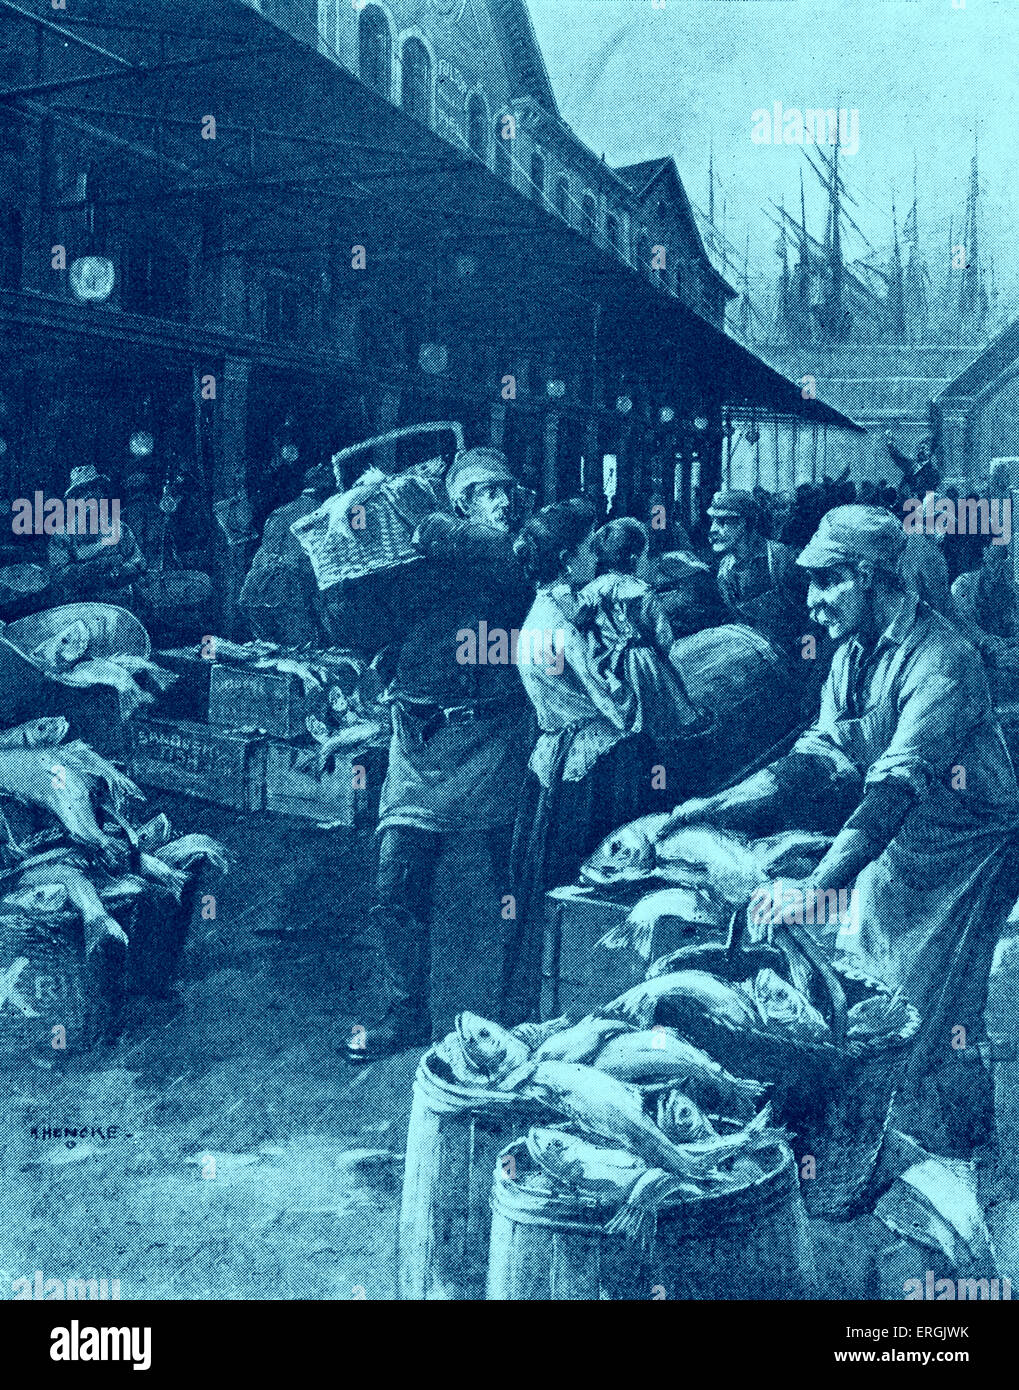 Alten Fulton Market, New York, ca. 1890 s. Abbildung zeigt einen Donnerstag Morgen auf dem Markt der Fulton Street market Männer Stockfoto